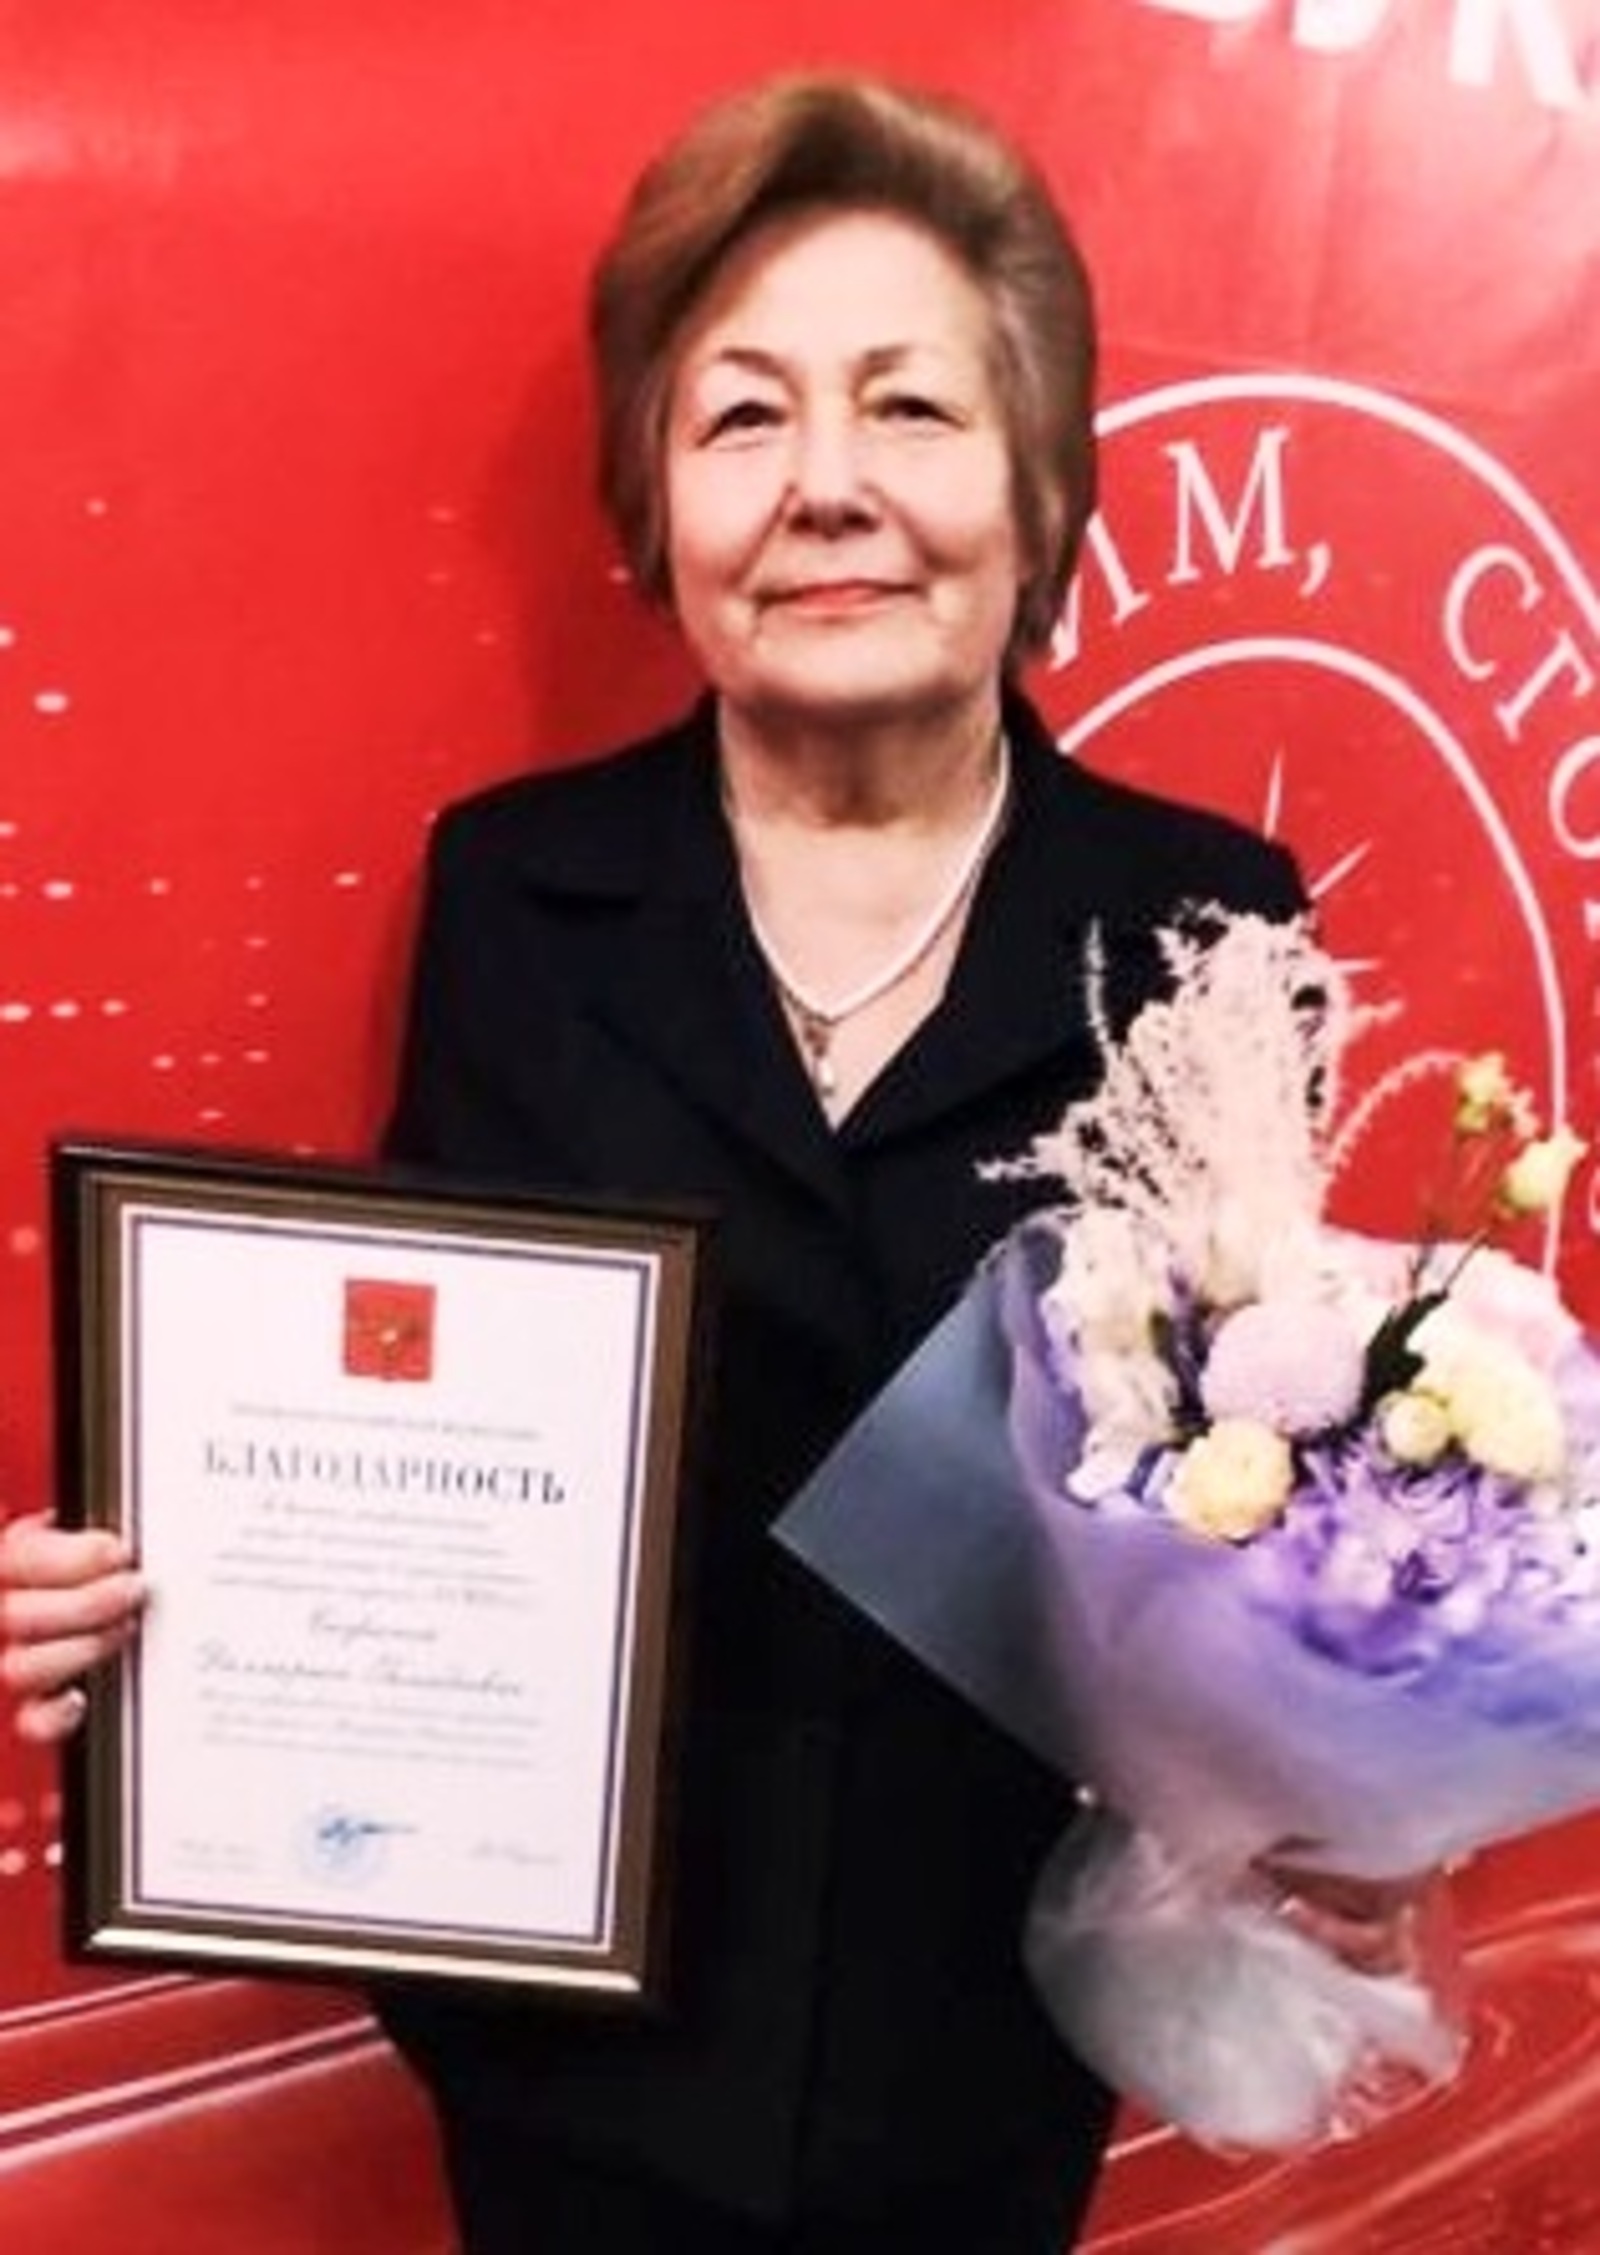 48 лет Лариса Гинадеевна Сафина проработала в Кутеремской больнице